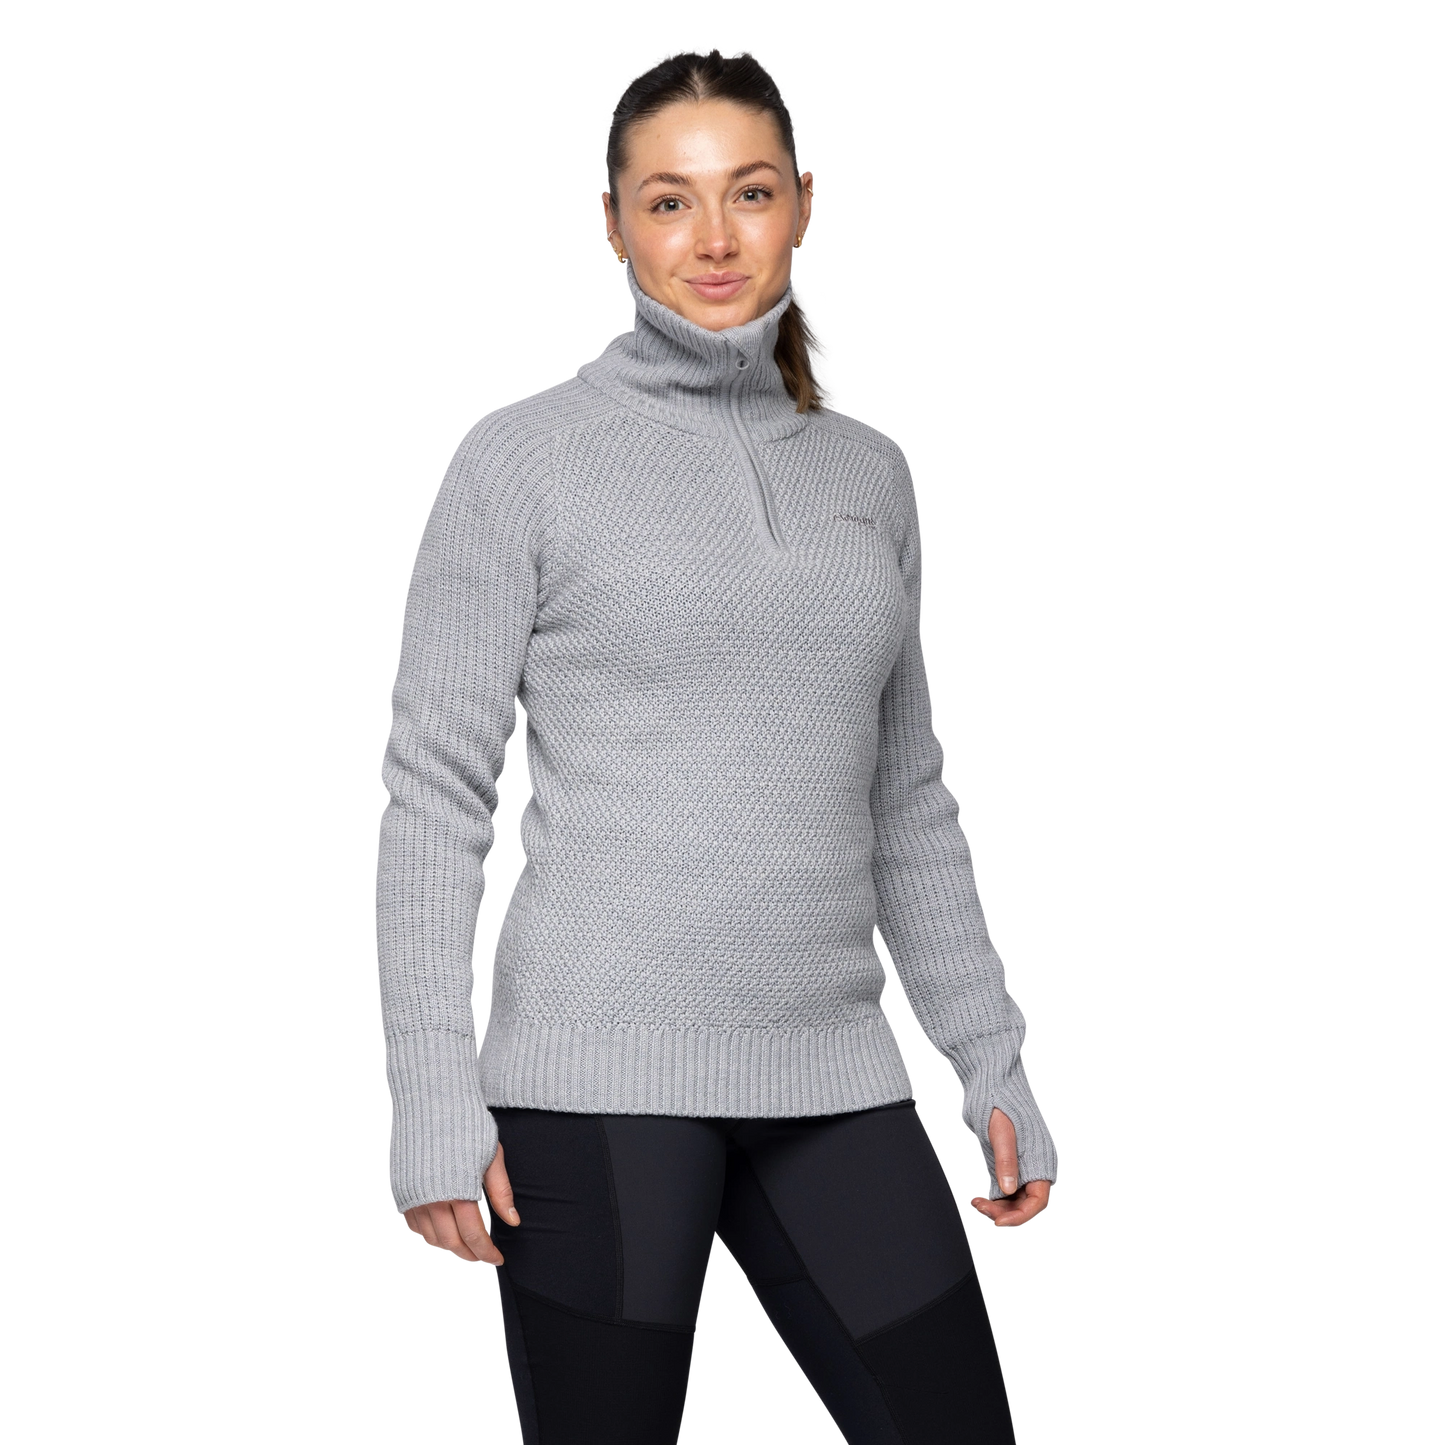 Bergans of Norway - Ulriken | Merino wool women's sweater with turtleneck